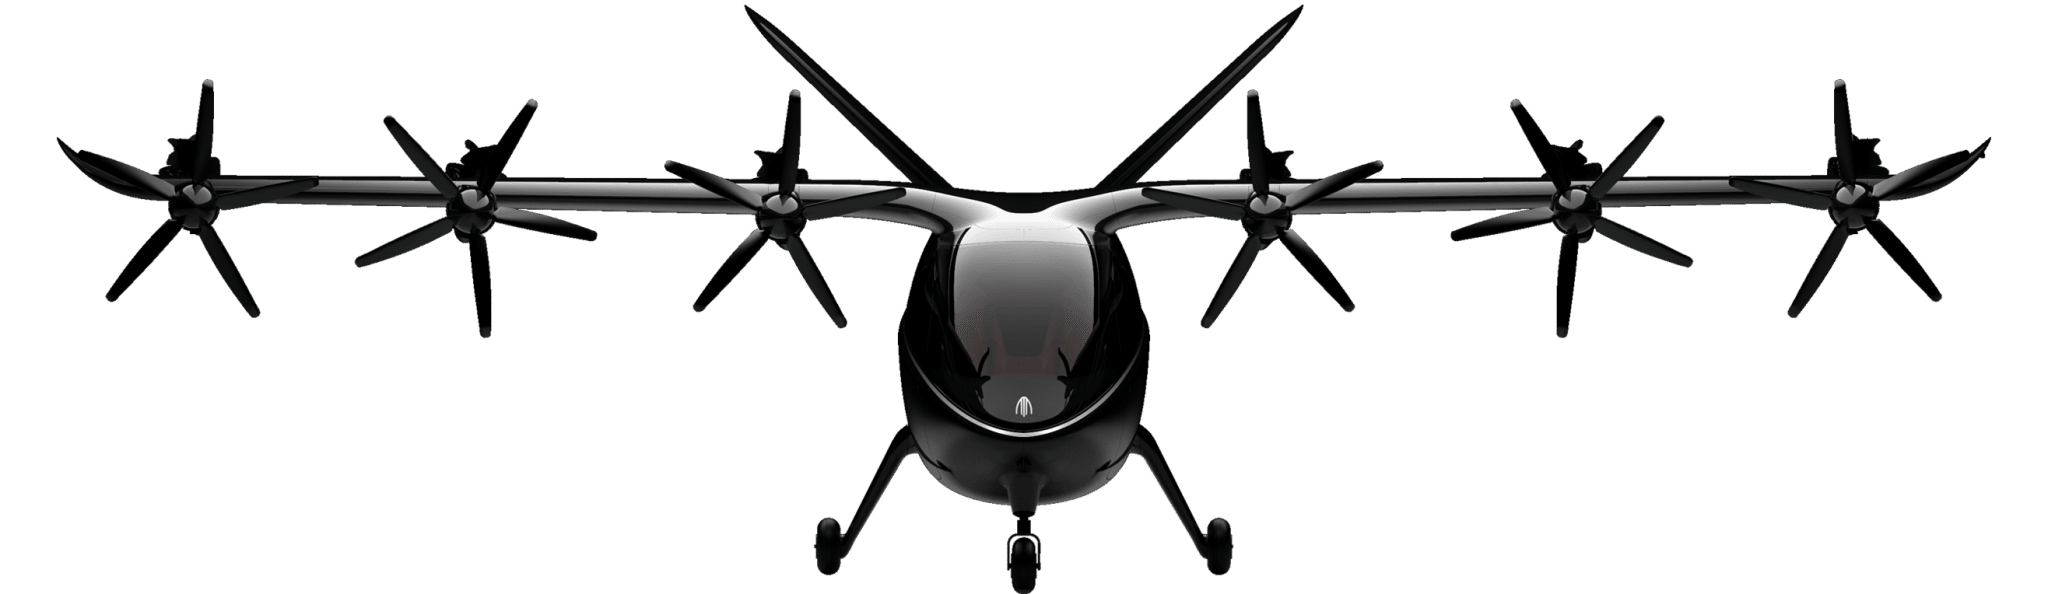 VTOL by Archer Aviation e FCA main